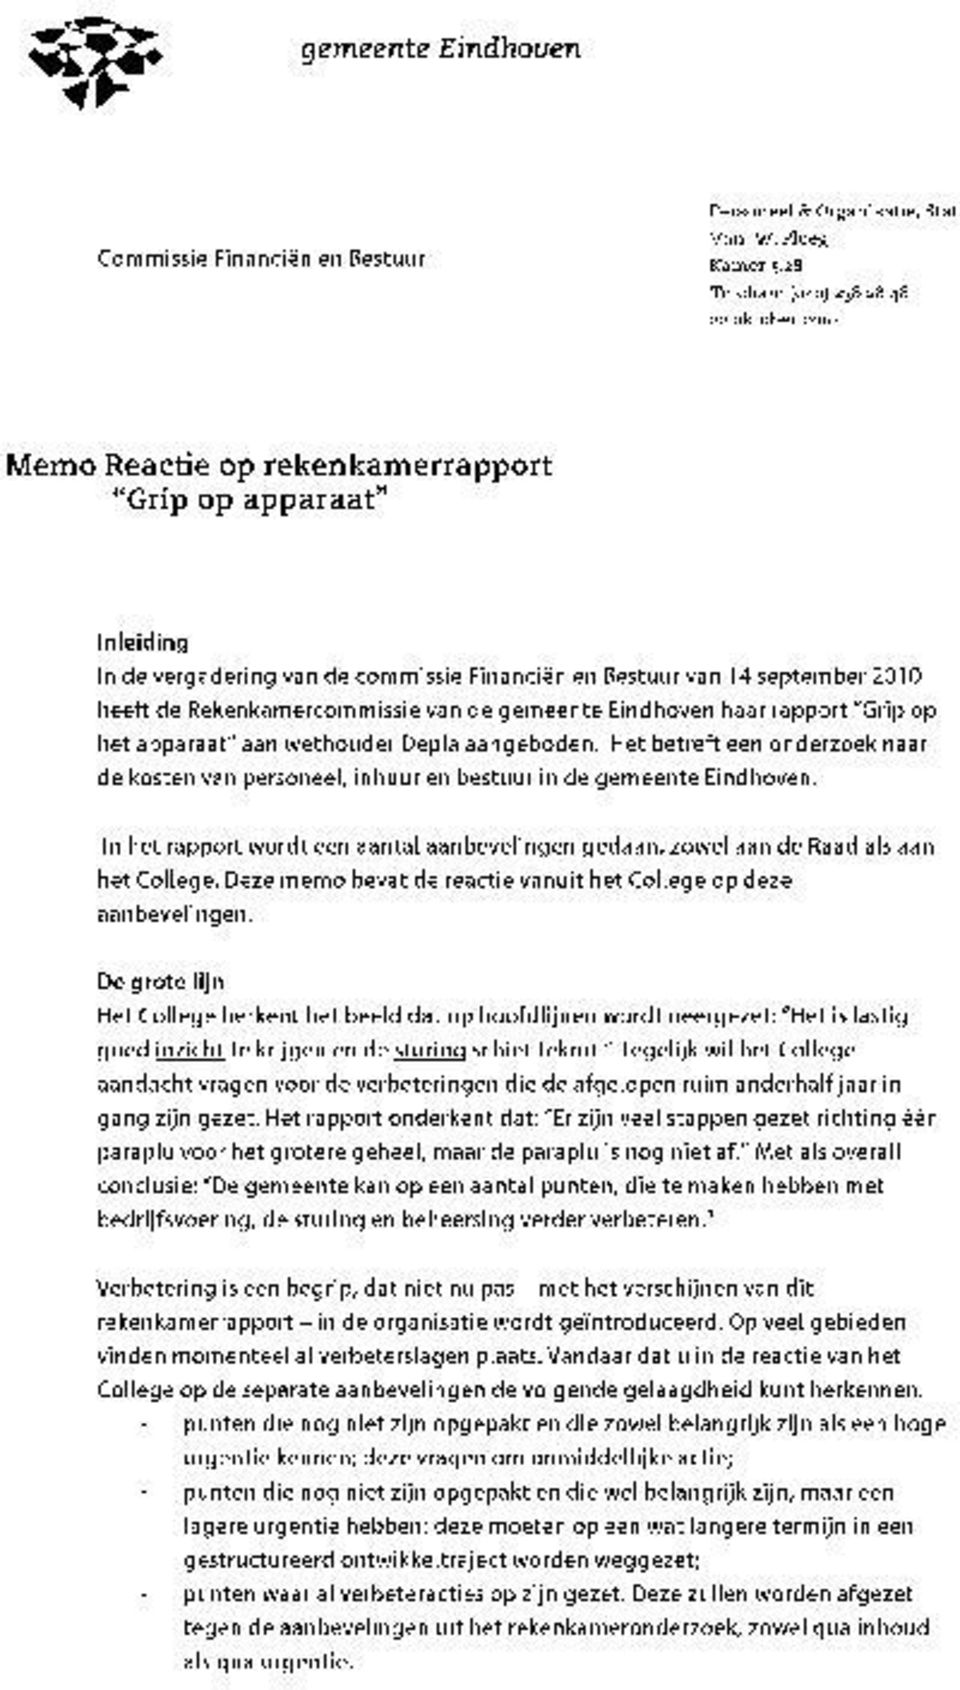 Rekenkamercommissie van de gemeente Eindhoven haar rapport "Grip op het apparaat" aan wethouder Depla aangeboden.